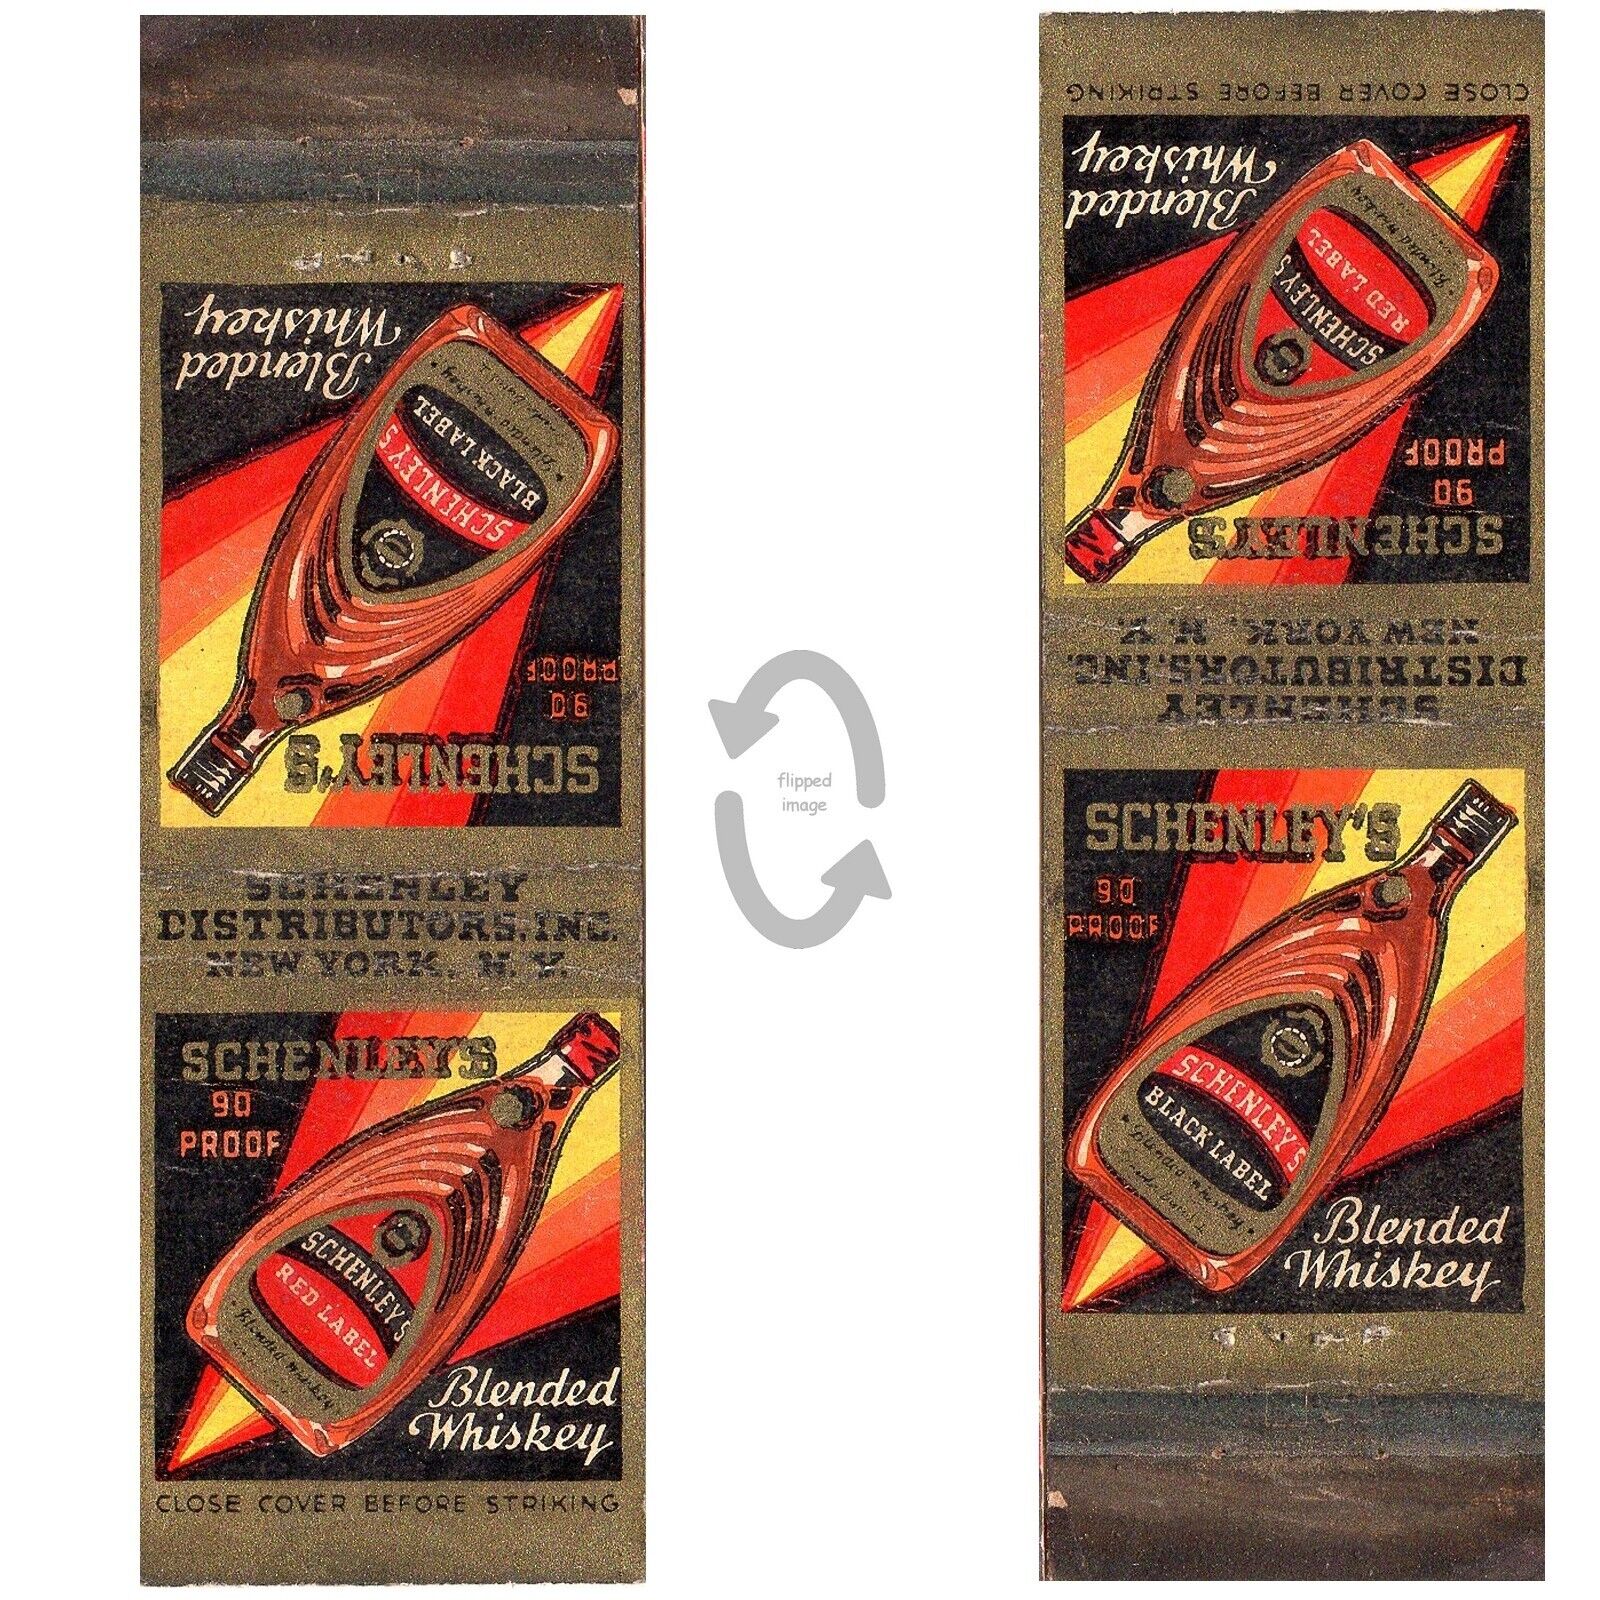 Vintage Matchbook Cover Schenleys Red Black Label Blended Whiskey 1930s bottle